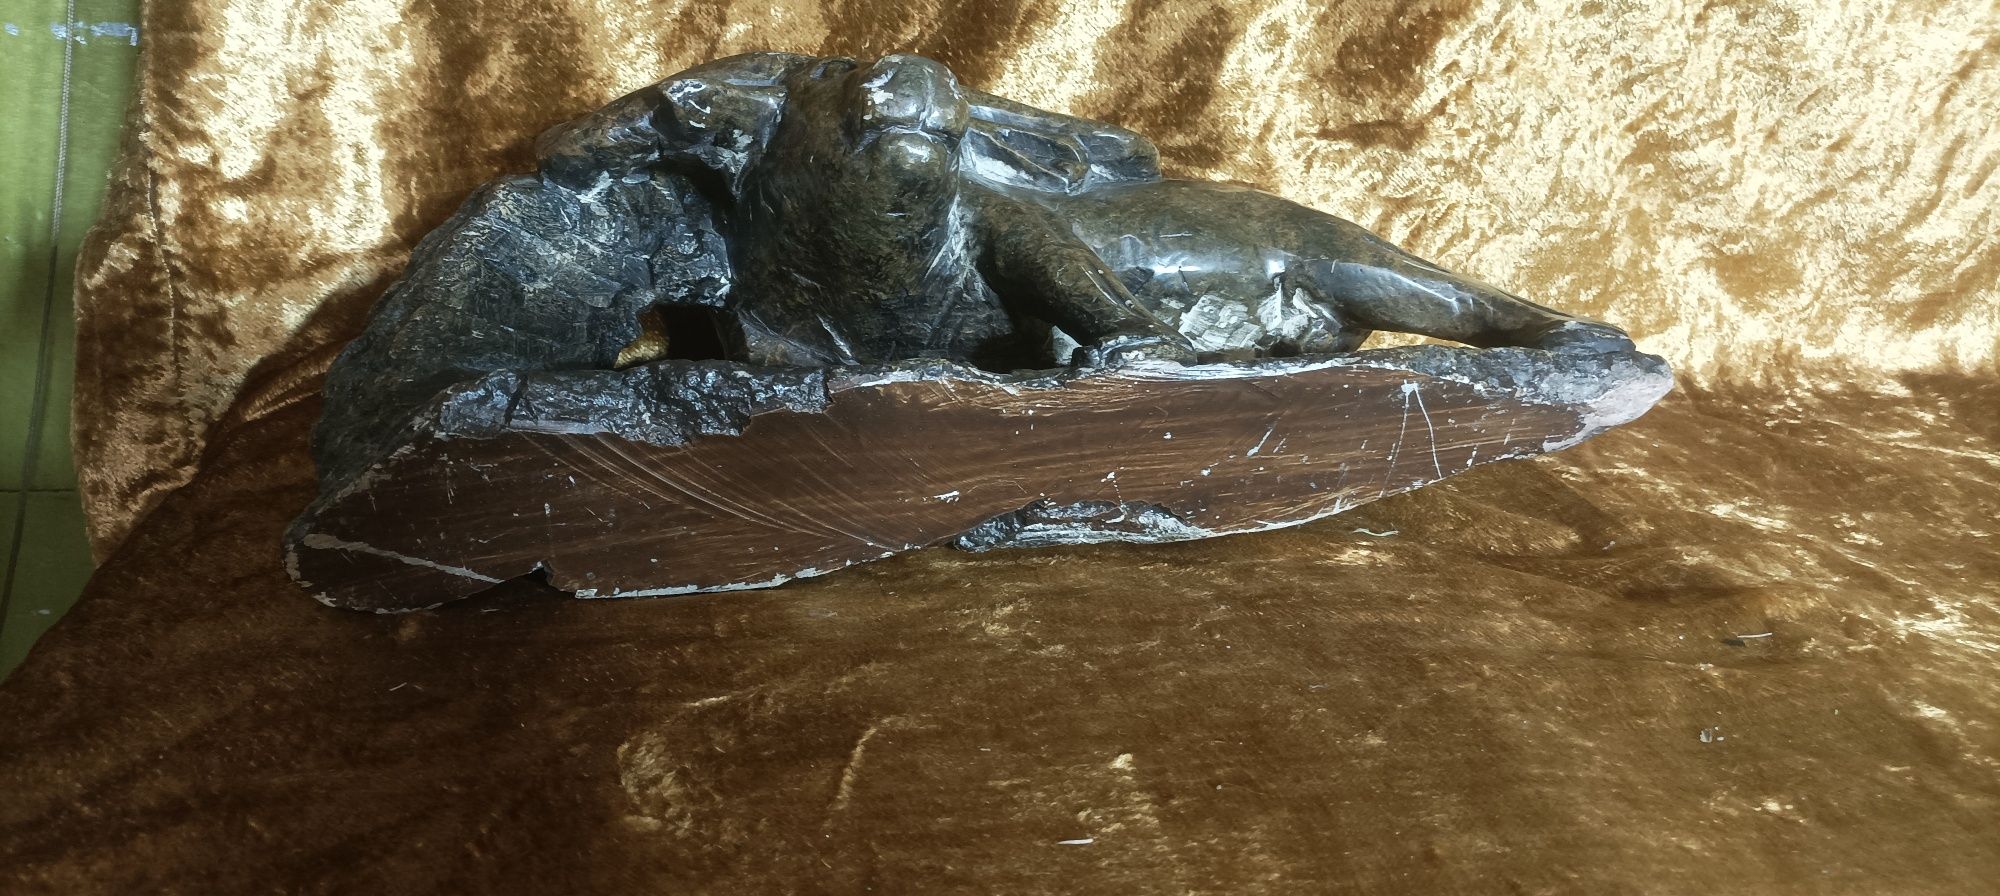 Rzeźba byka z marmuru 9,5kg duża ciężka